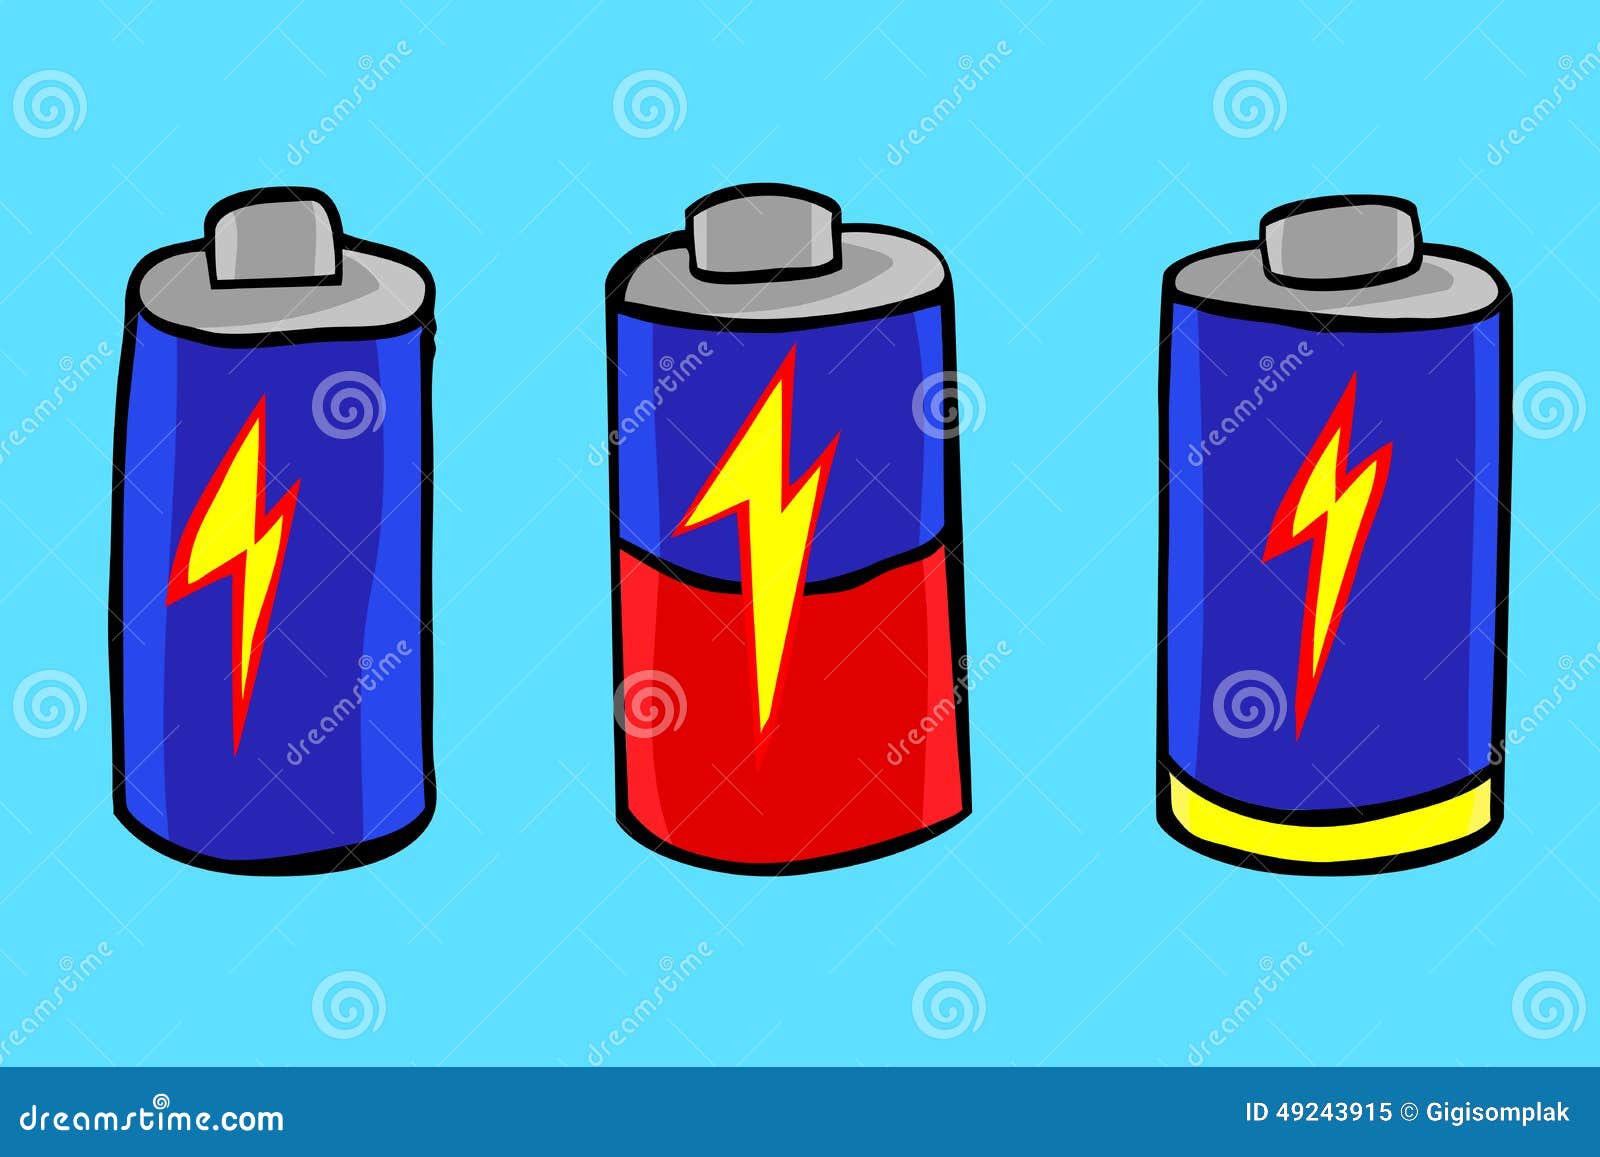 "Фосфорные батареи" иллюстрация. Фейерверки батарея рисунок. Стрелковая батарея рисунок.